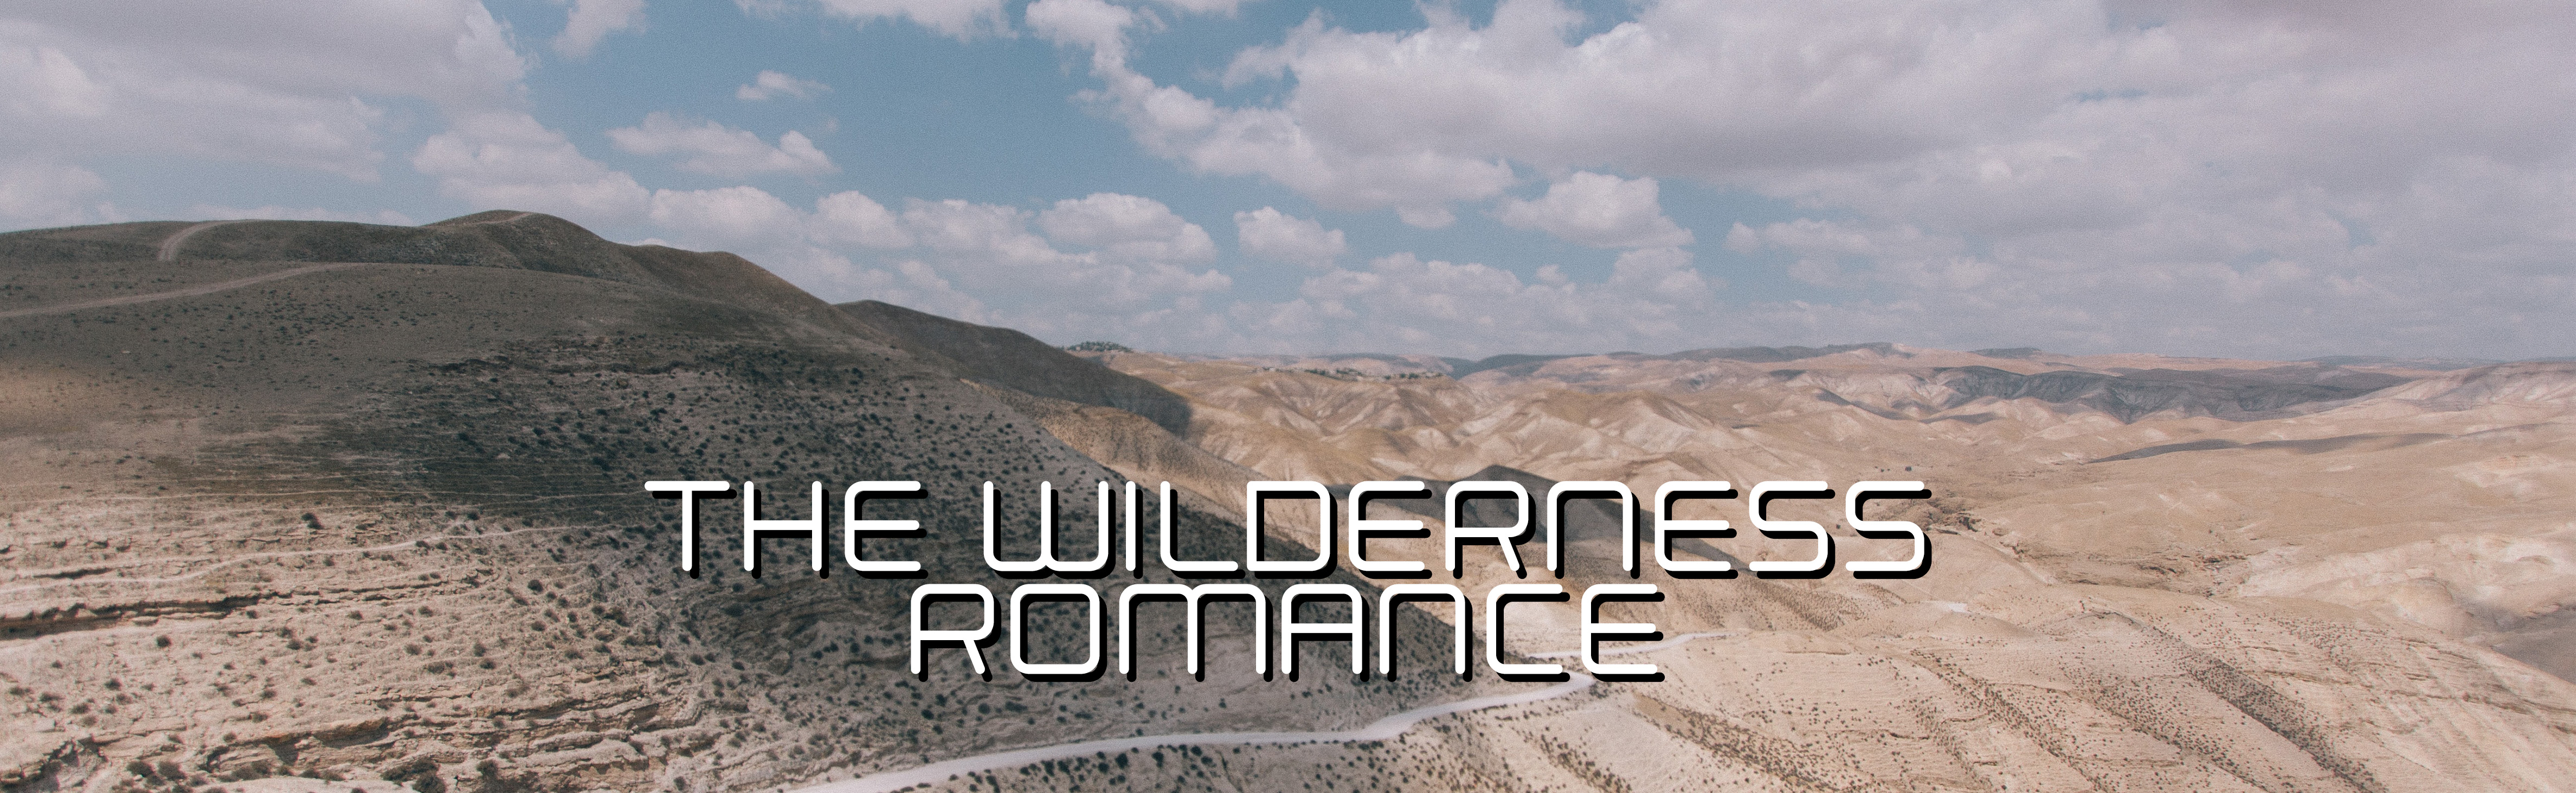 The Wilderness Romance